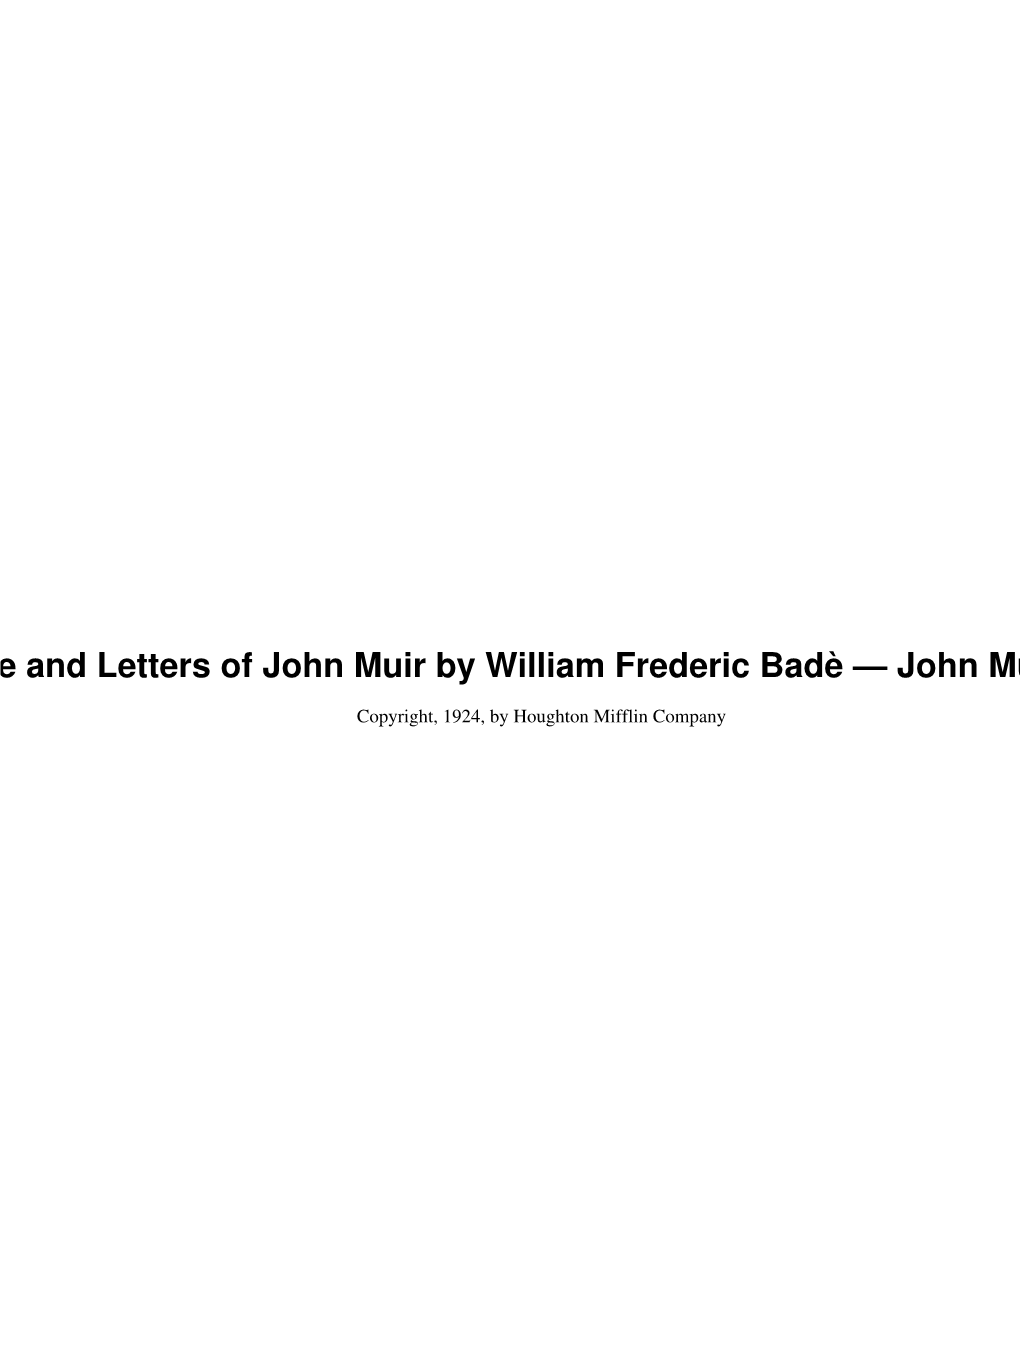 John Muir Writings